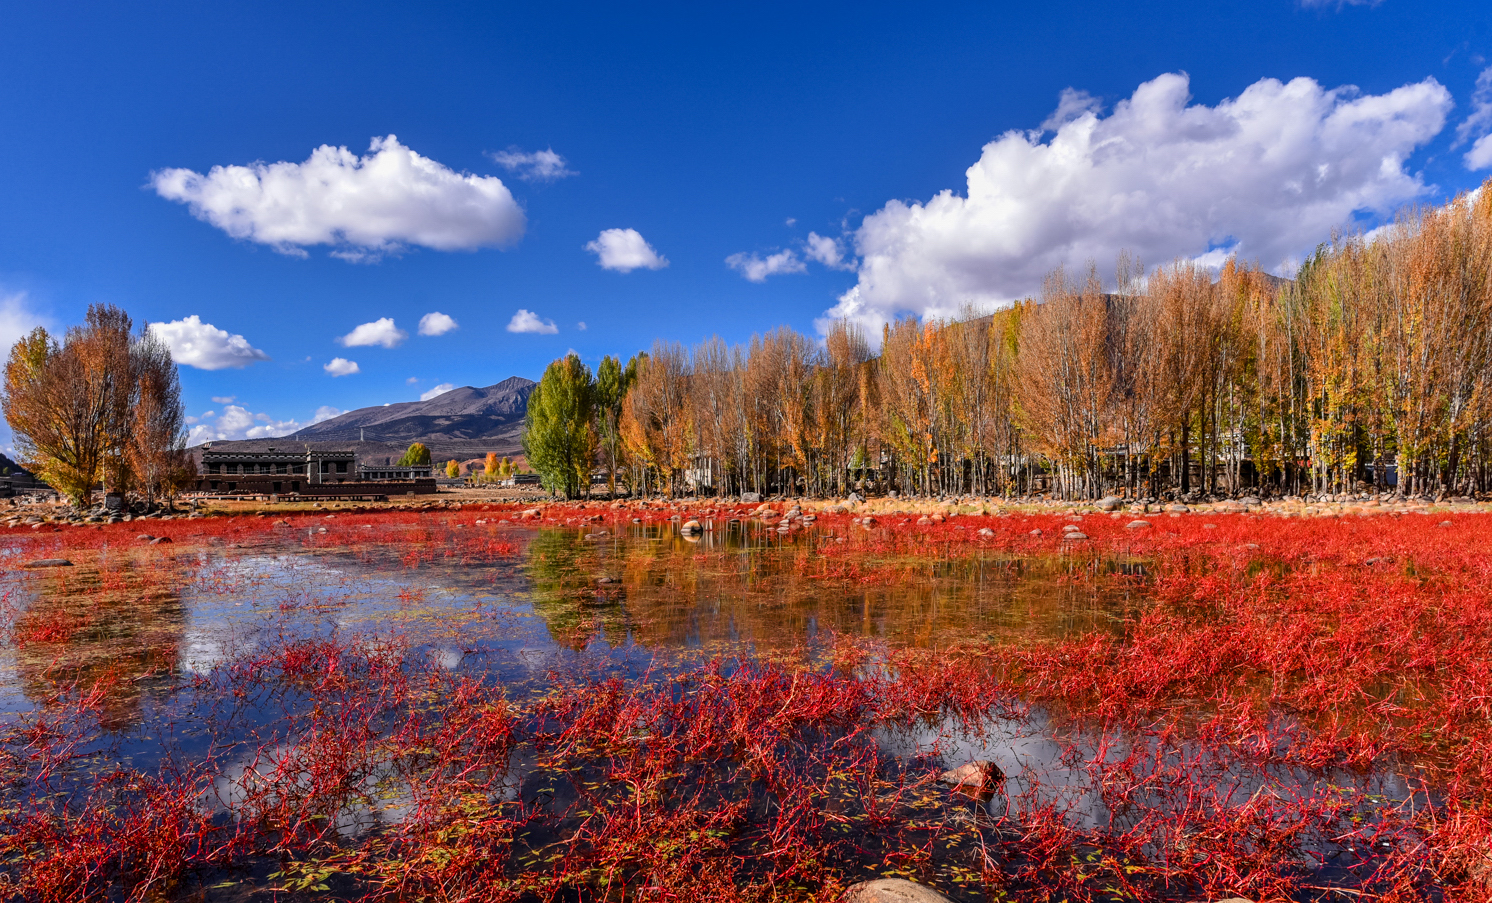 Autumn landscapes around Daocheng